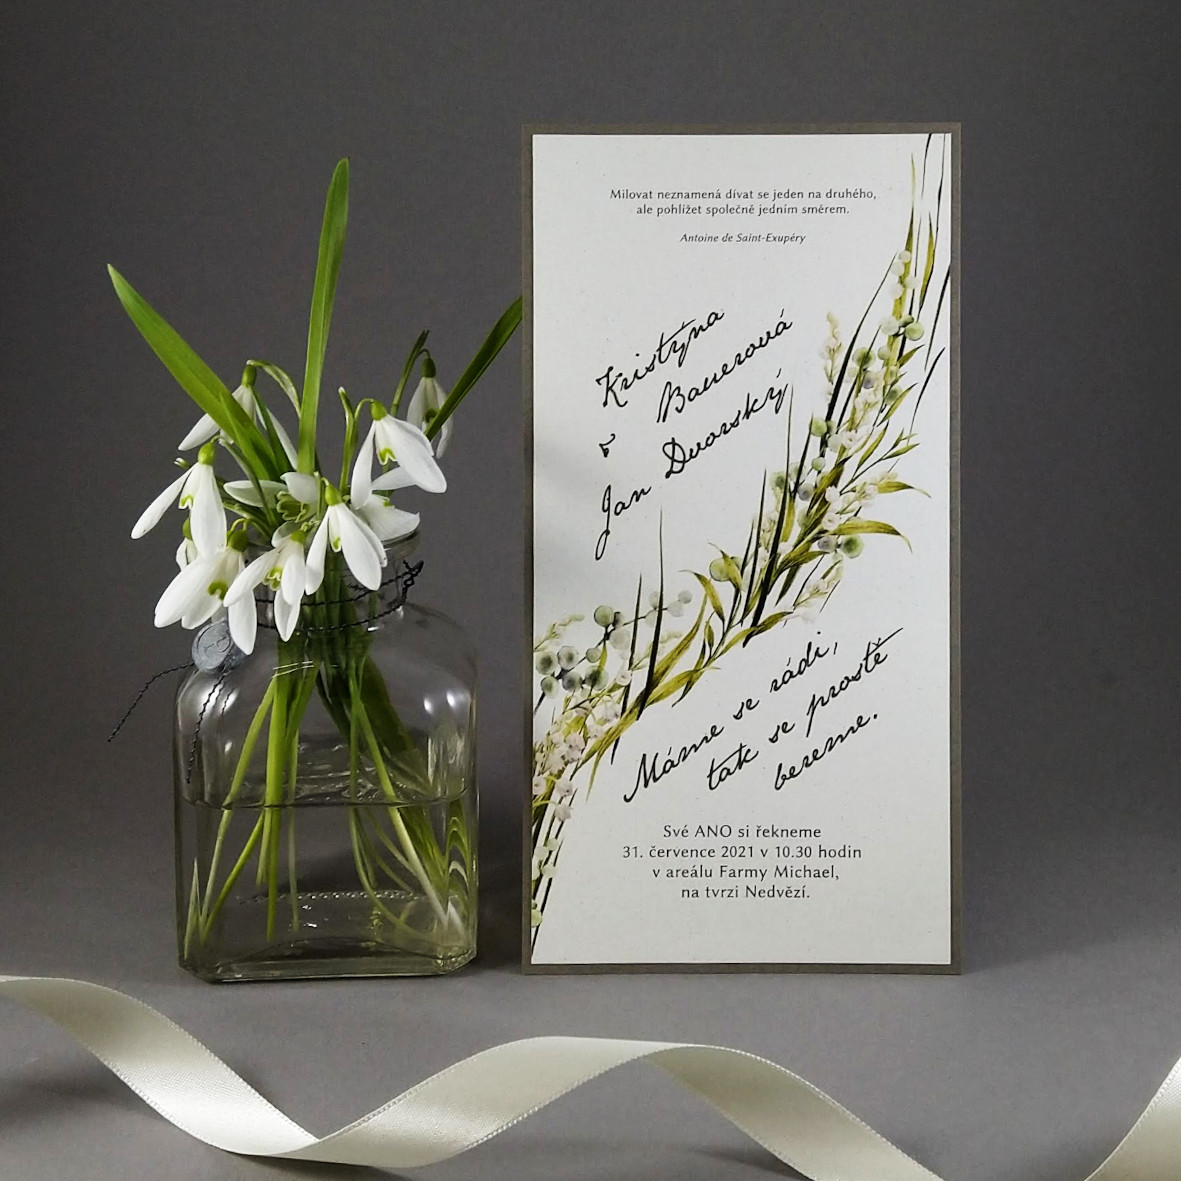 Svatební oznámení – dvouvrstvá DL karta z ekologických papírů s příměsí kukuřice a bavlny s motivem trávy a konvalinek